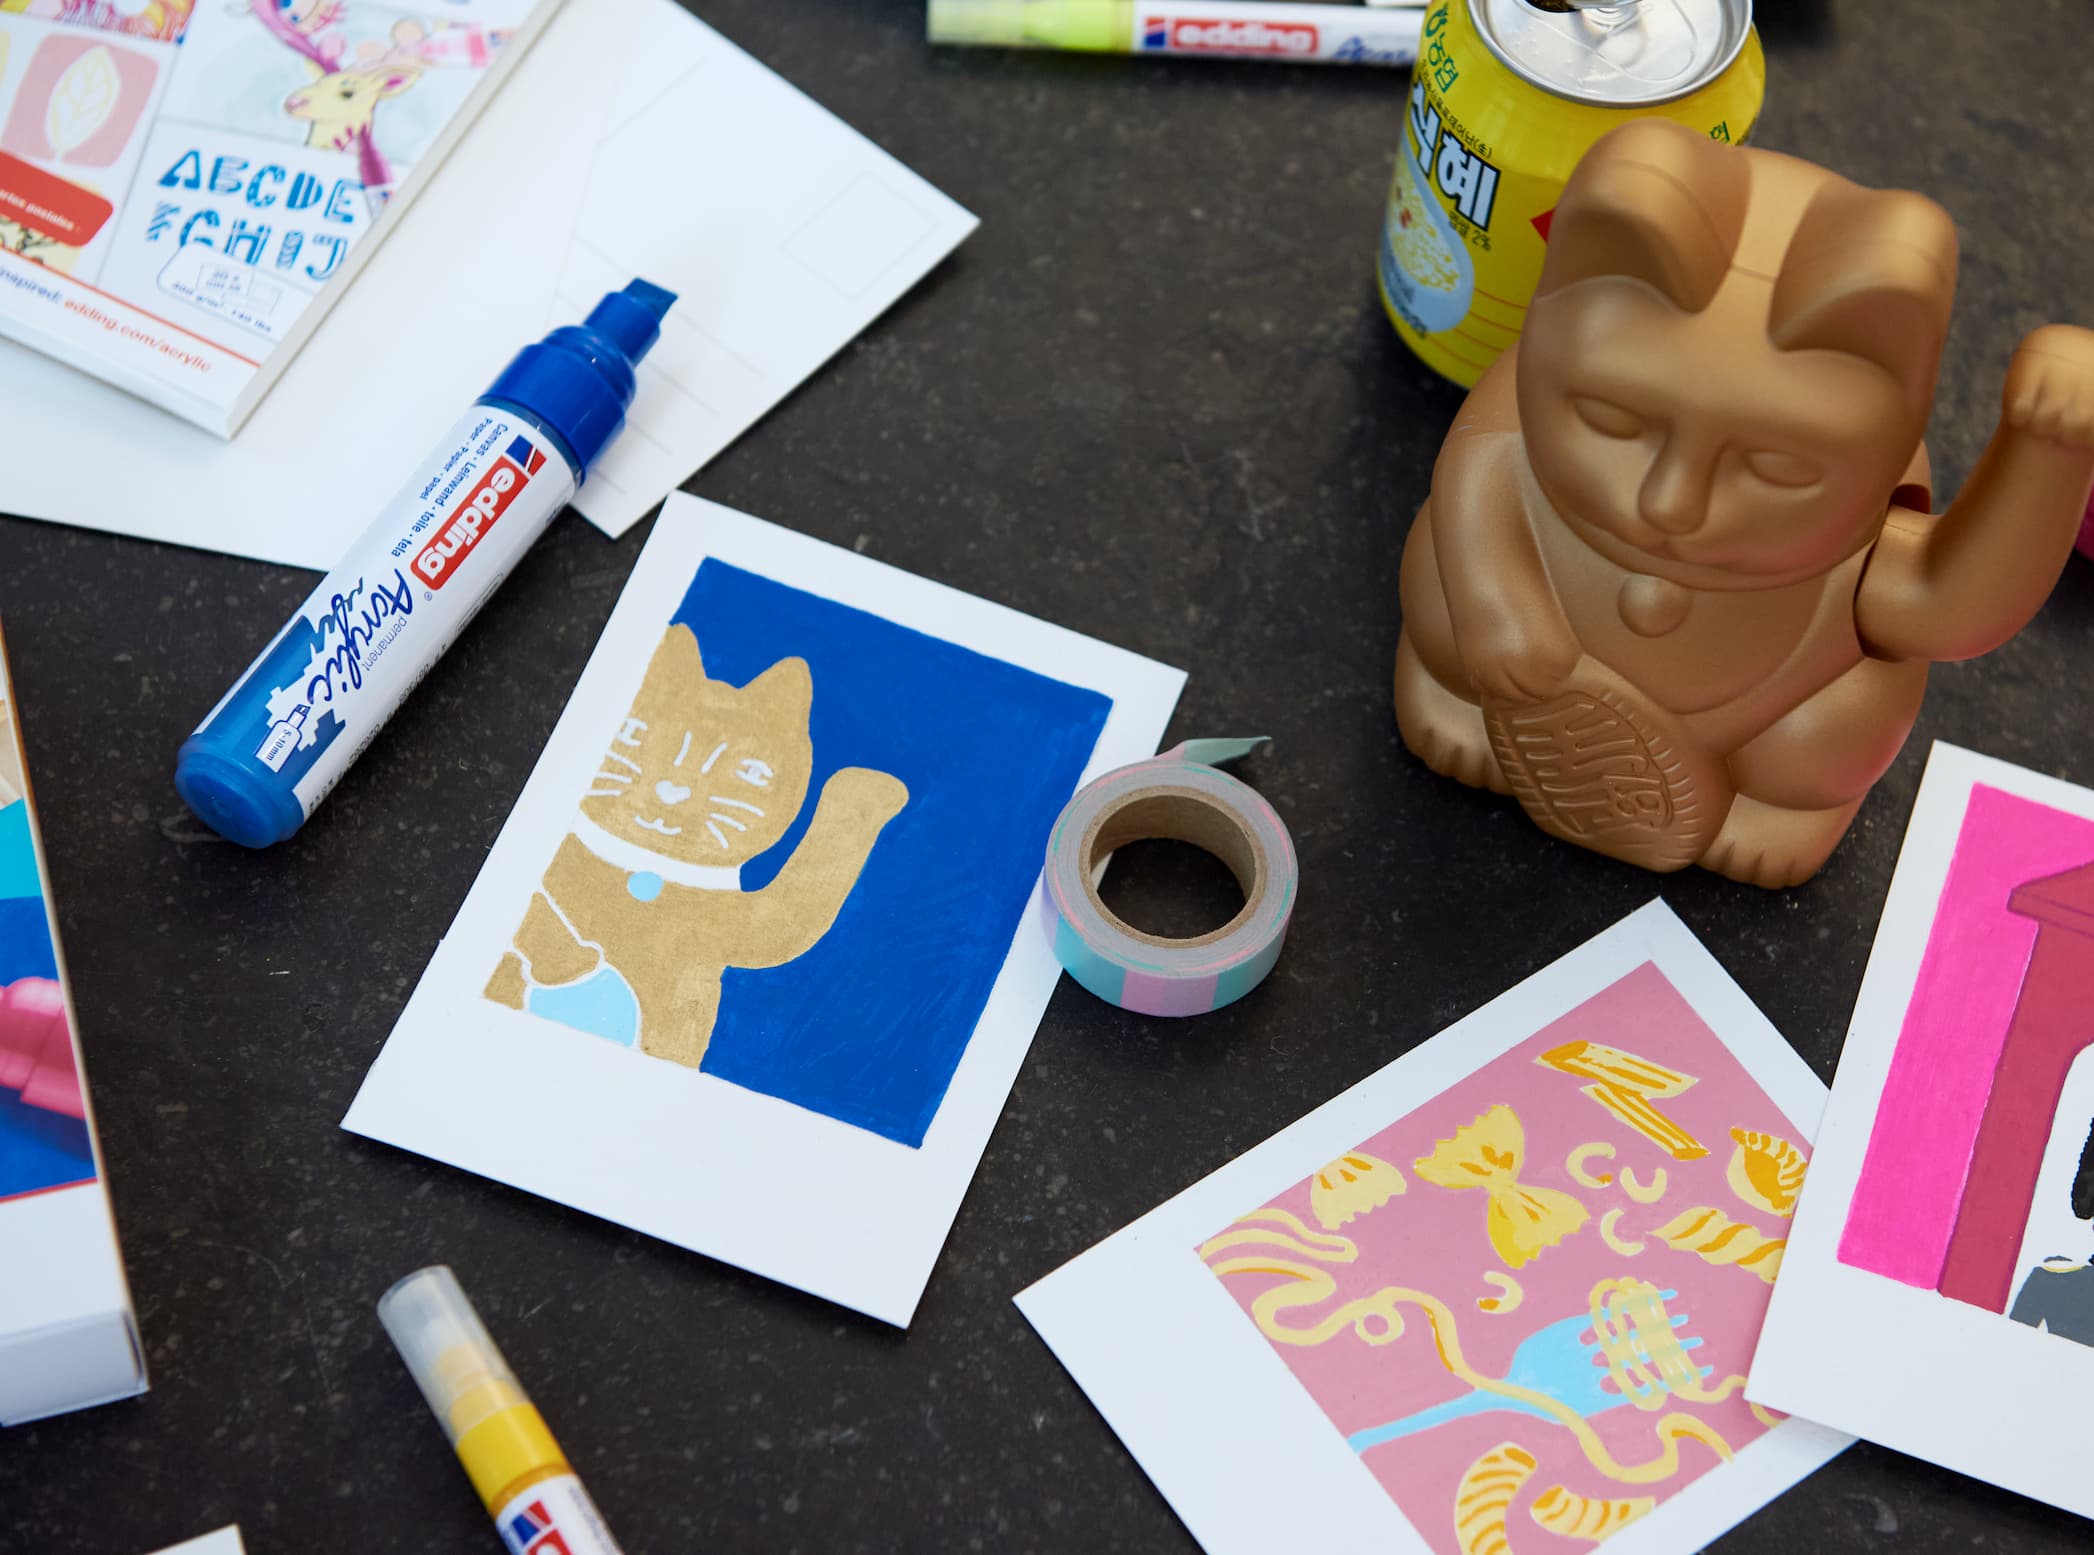 Ein kreativer Arbeitsplatz mit Künstlerbedarf, darunter edding 5000 Acrylmarker breit mit hochpigmentierter Tinte, ausgeschnittene Katzenillustrationen und eine skurrile Affenfigur zwischen buntem Papier auf einer dunklen Oberfläche.